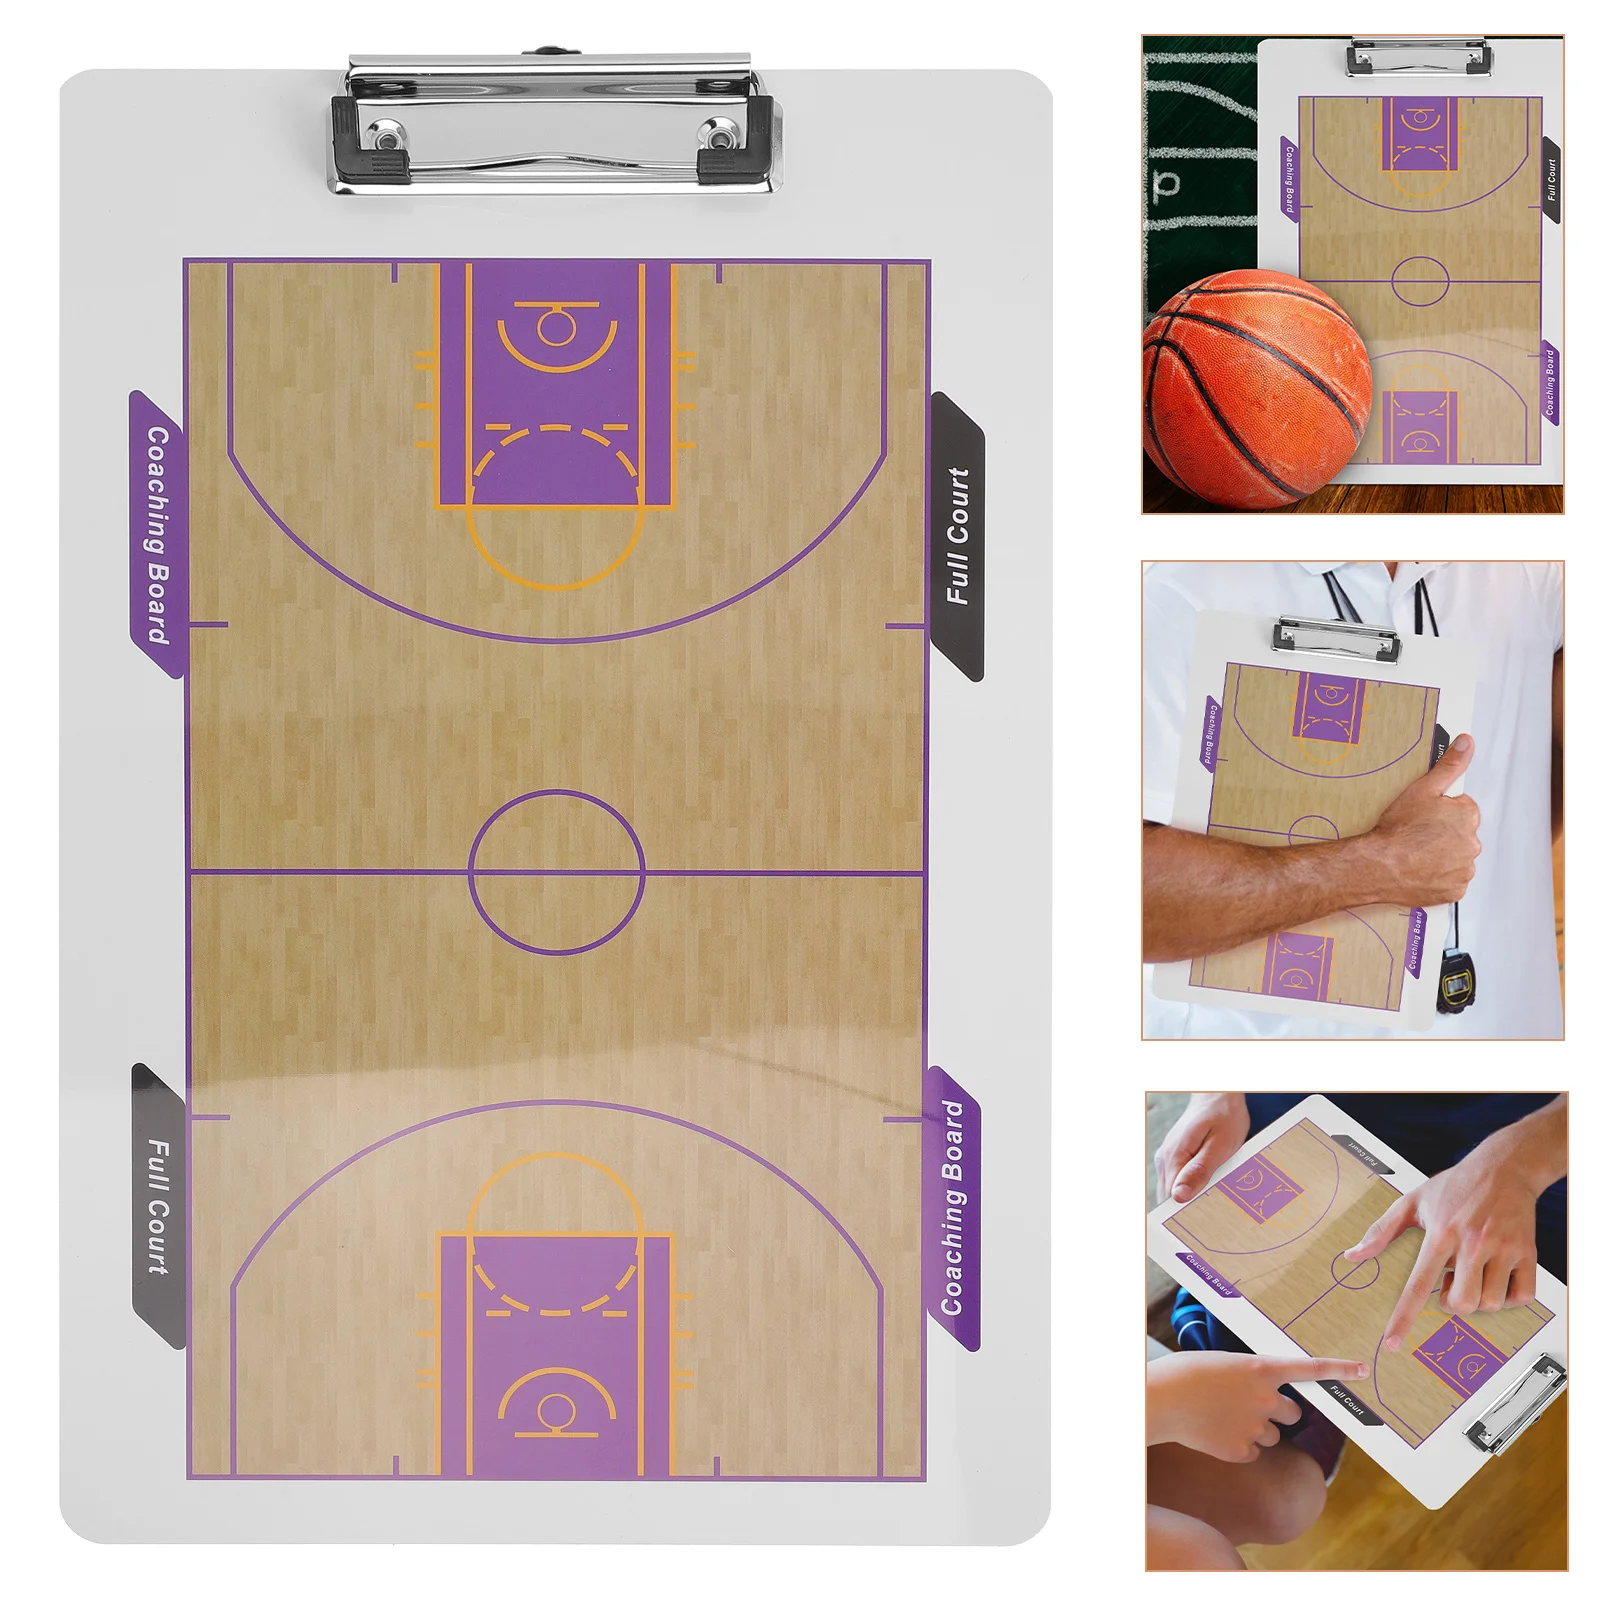 

Баскетбольная доска, белая доска, тренировочные принадлежности для мальчиков, сухой стираемый двухсторонний бумажник, тренировочные аксессуары, бумажники из ПВХ